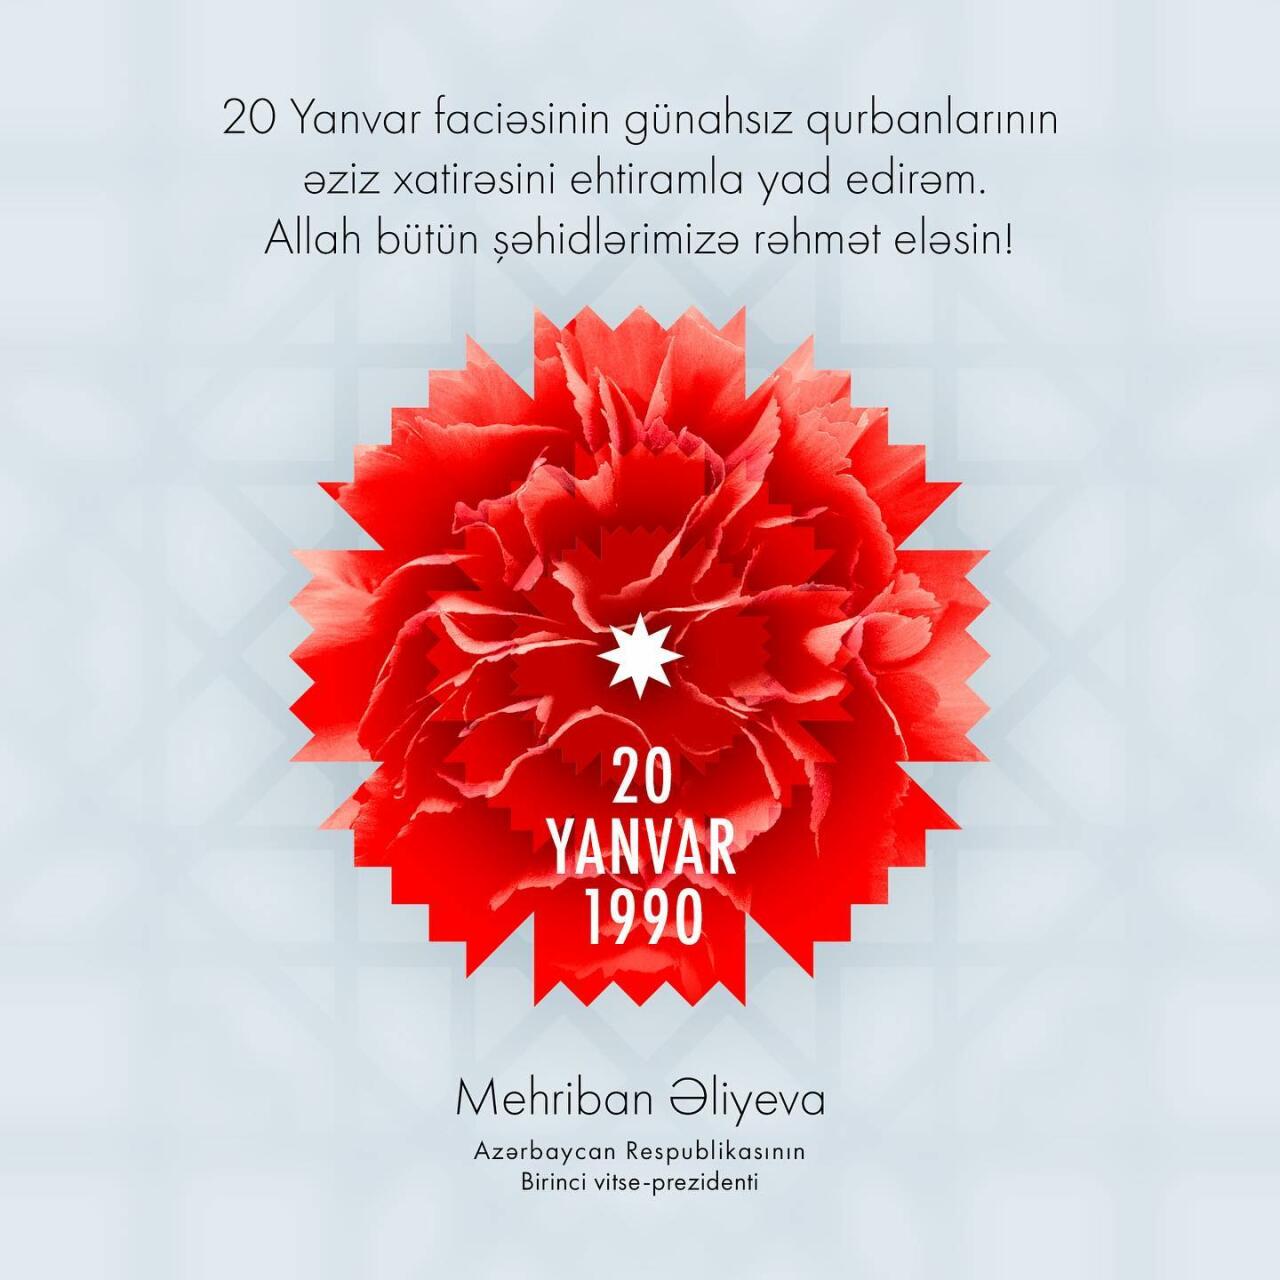 Первый вице-президент Мехрибан Алиева поделилась на своей официальной странице в Instagram публикацией в связи с 33-й годовщиной трагедии 20 Января